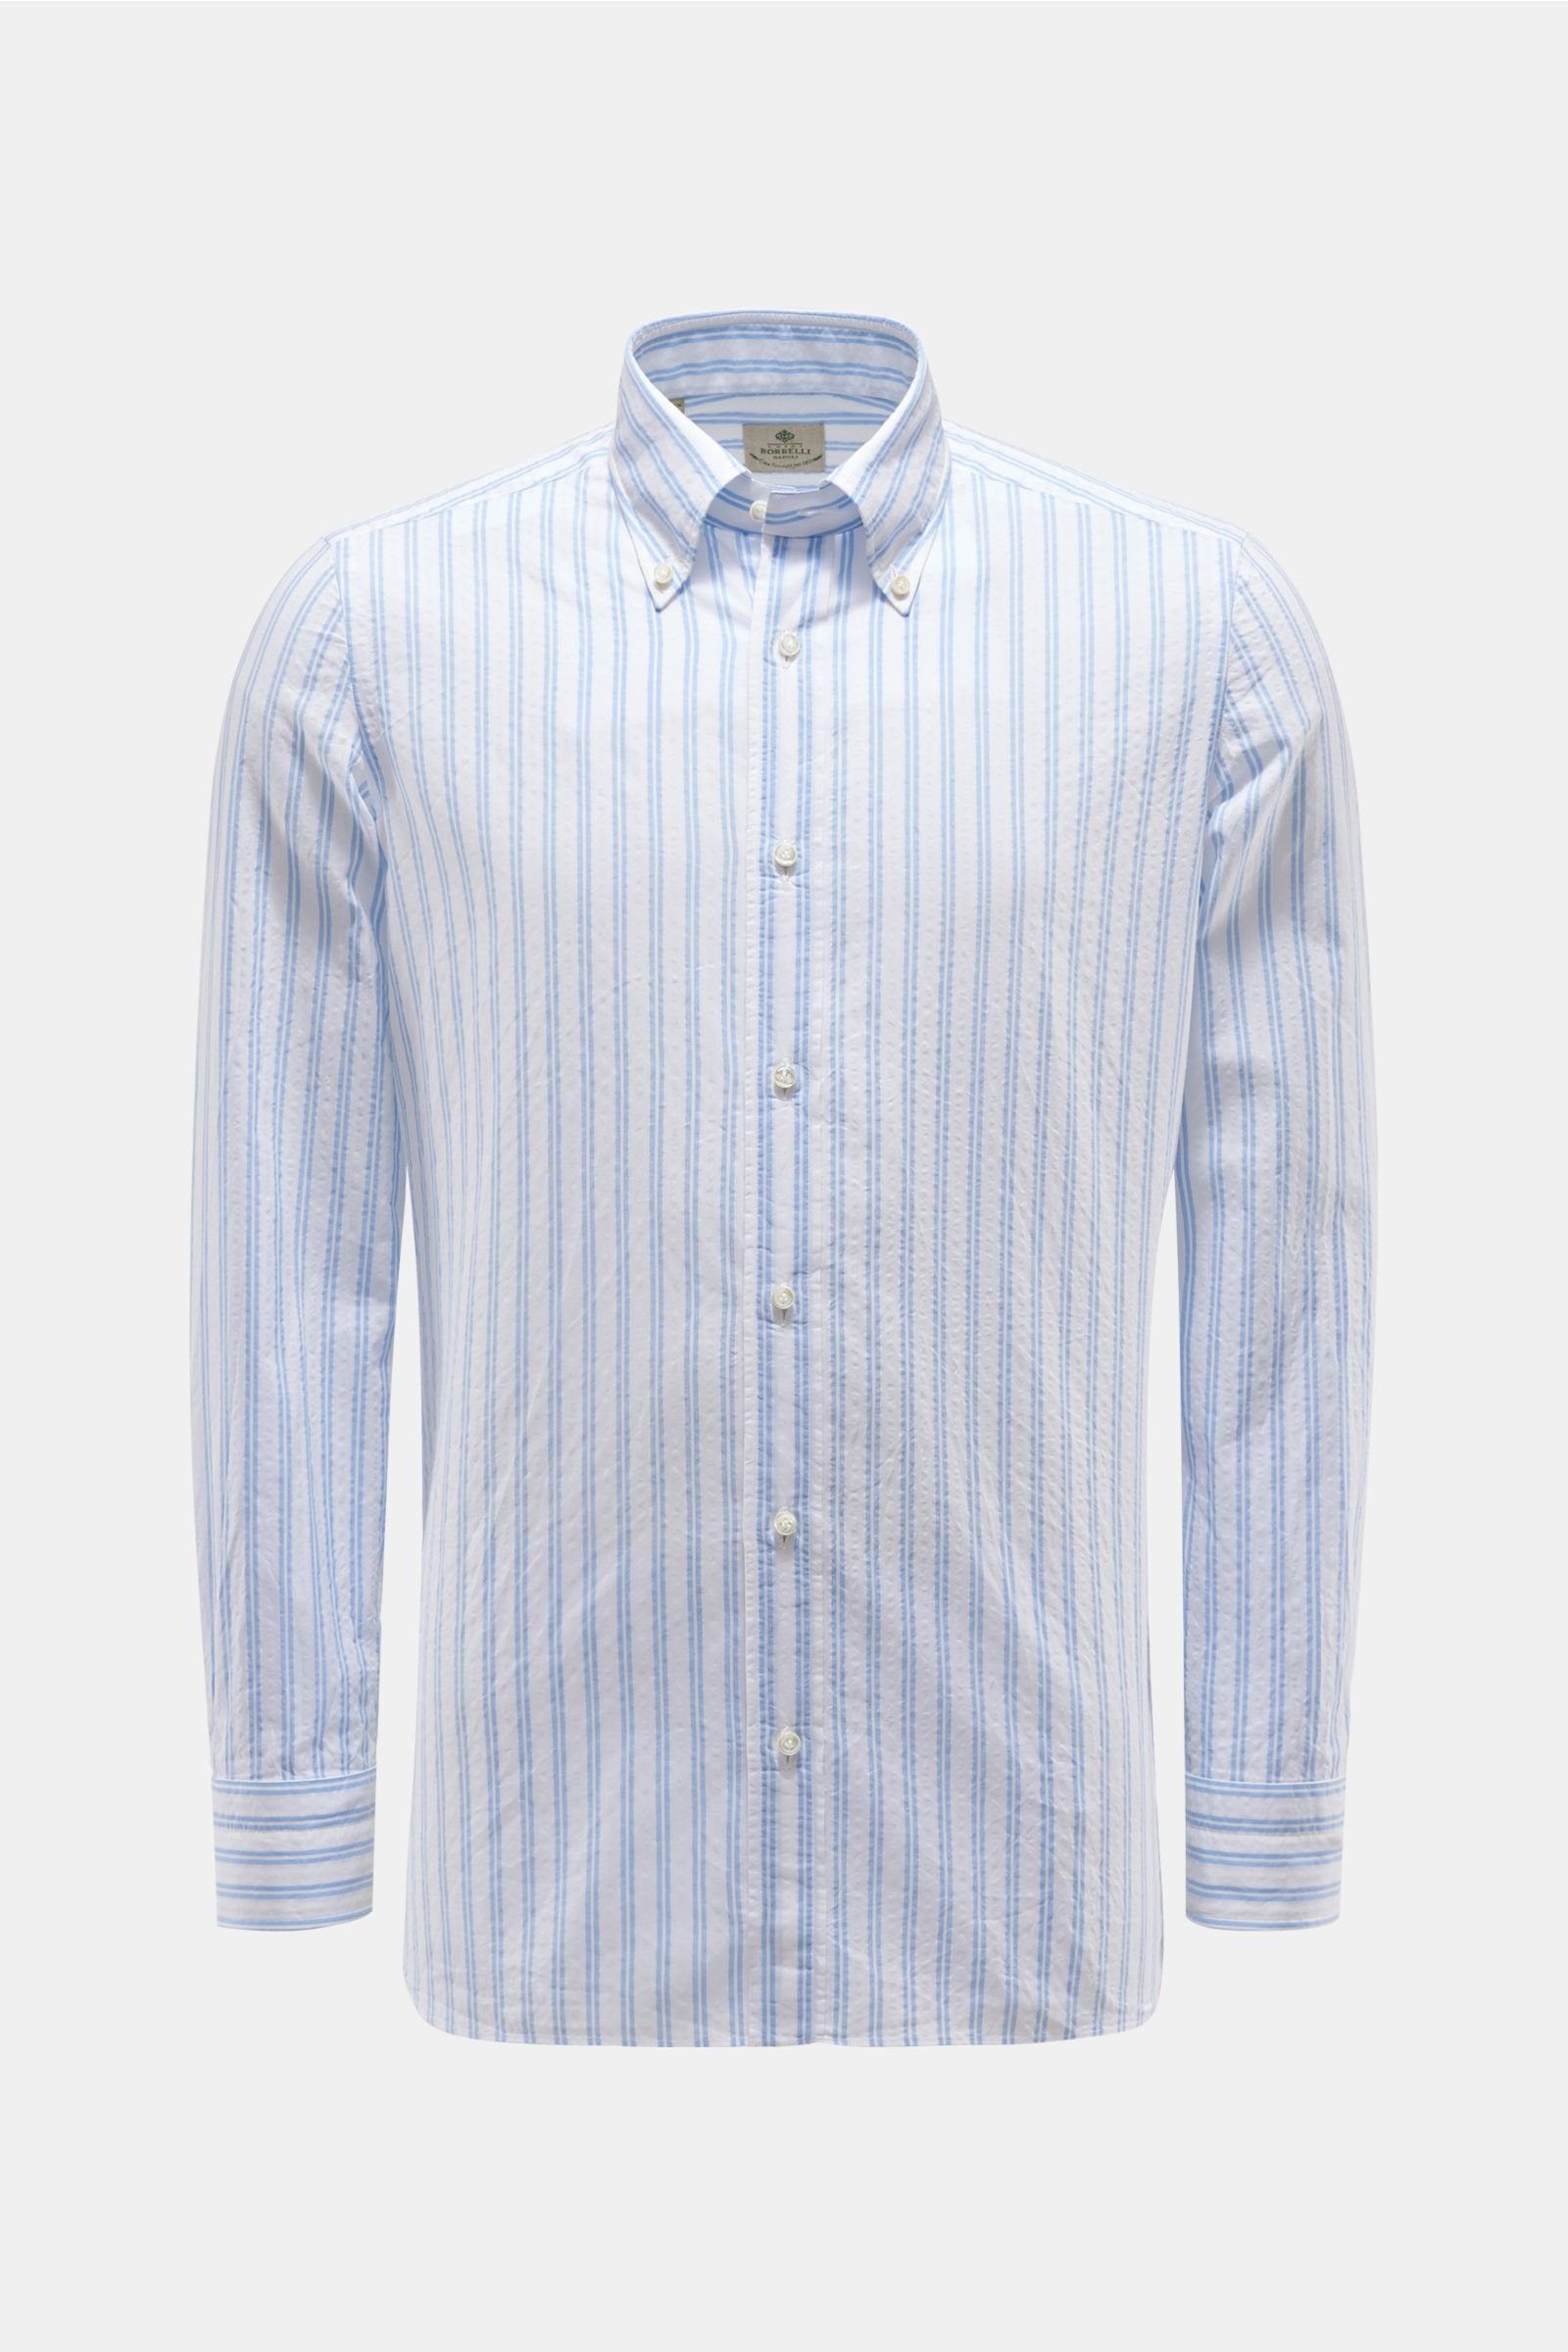 Seersucker-Hemd Button-Down-Kragen hellblau/weiß gestreift